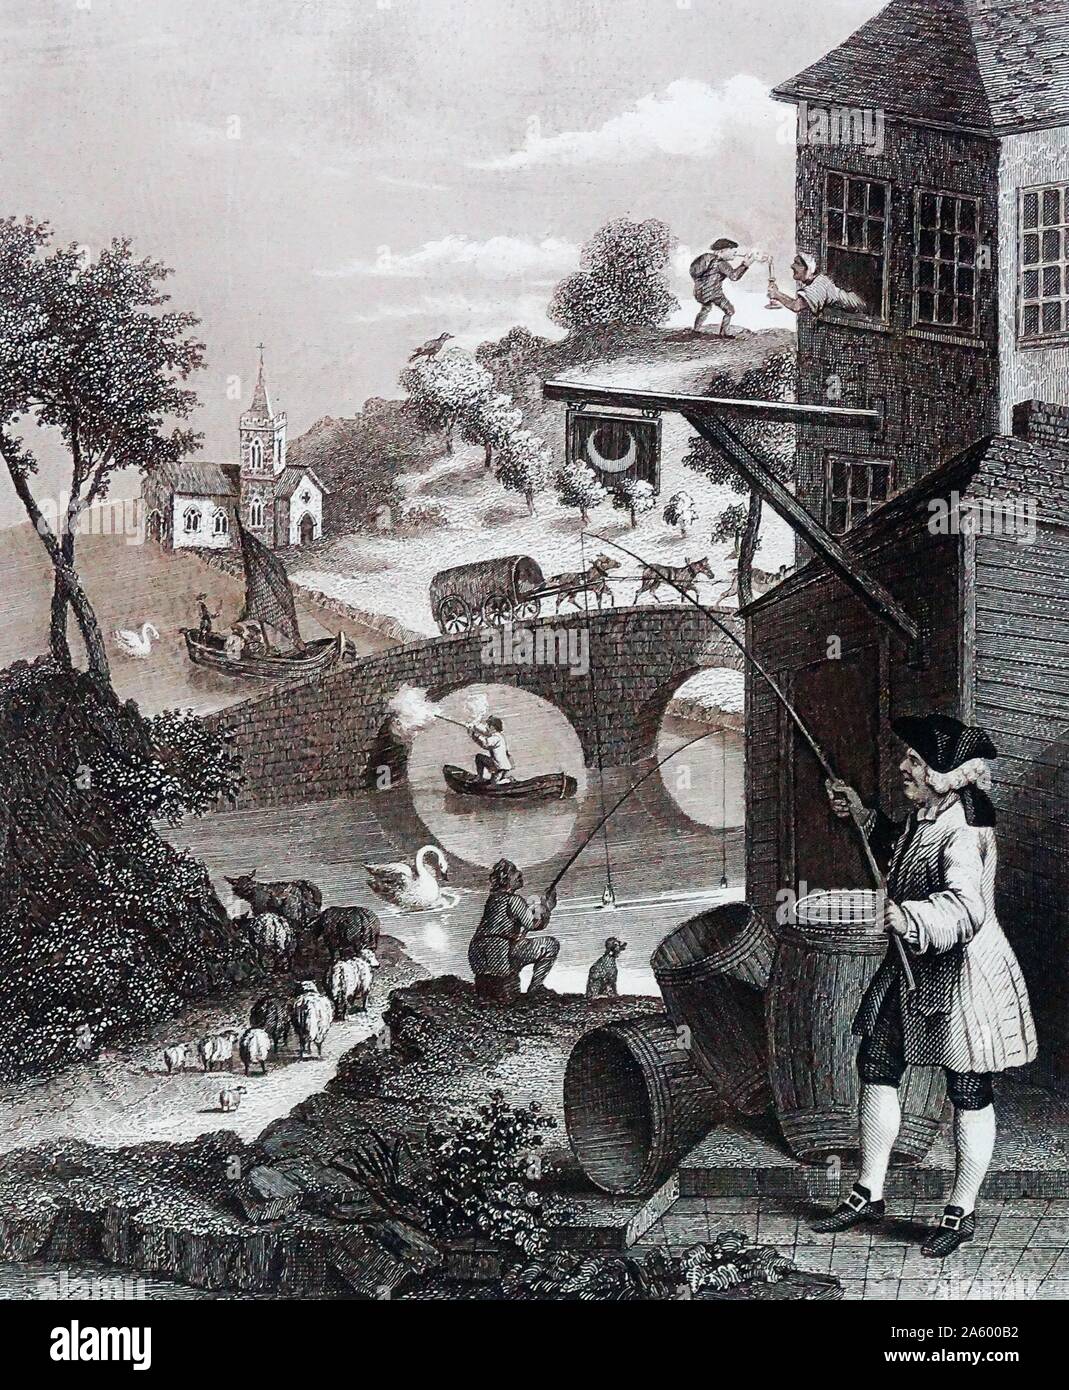 La satire de fausse Perspective est le titre d'une gravure produit par William Hogarth en 1754 pour son ami Joshua Kirby's brochure sur la perspective linéaire. Hogarth (1697 - 1764). Anglais, peintre, graveur, image satirique. Banque D'Images